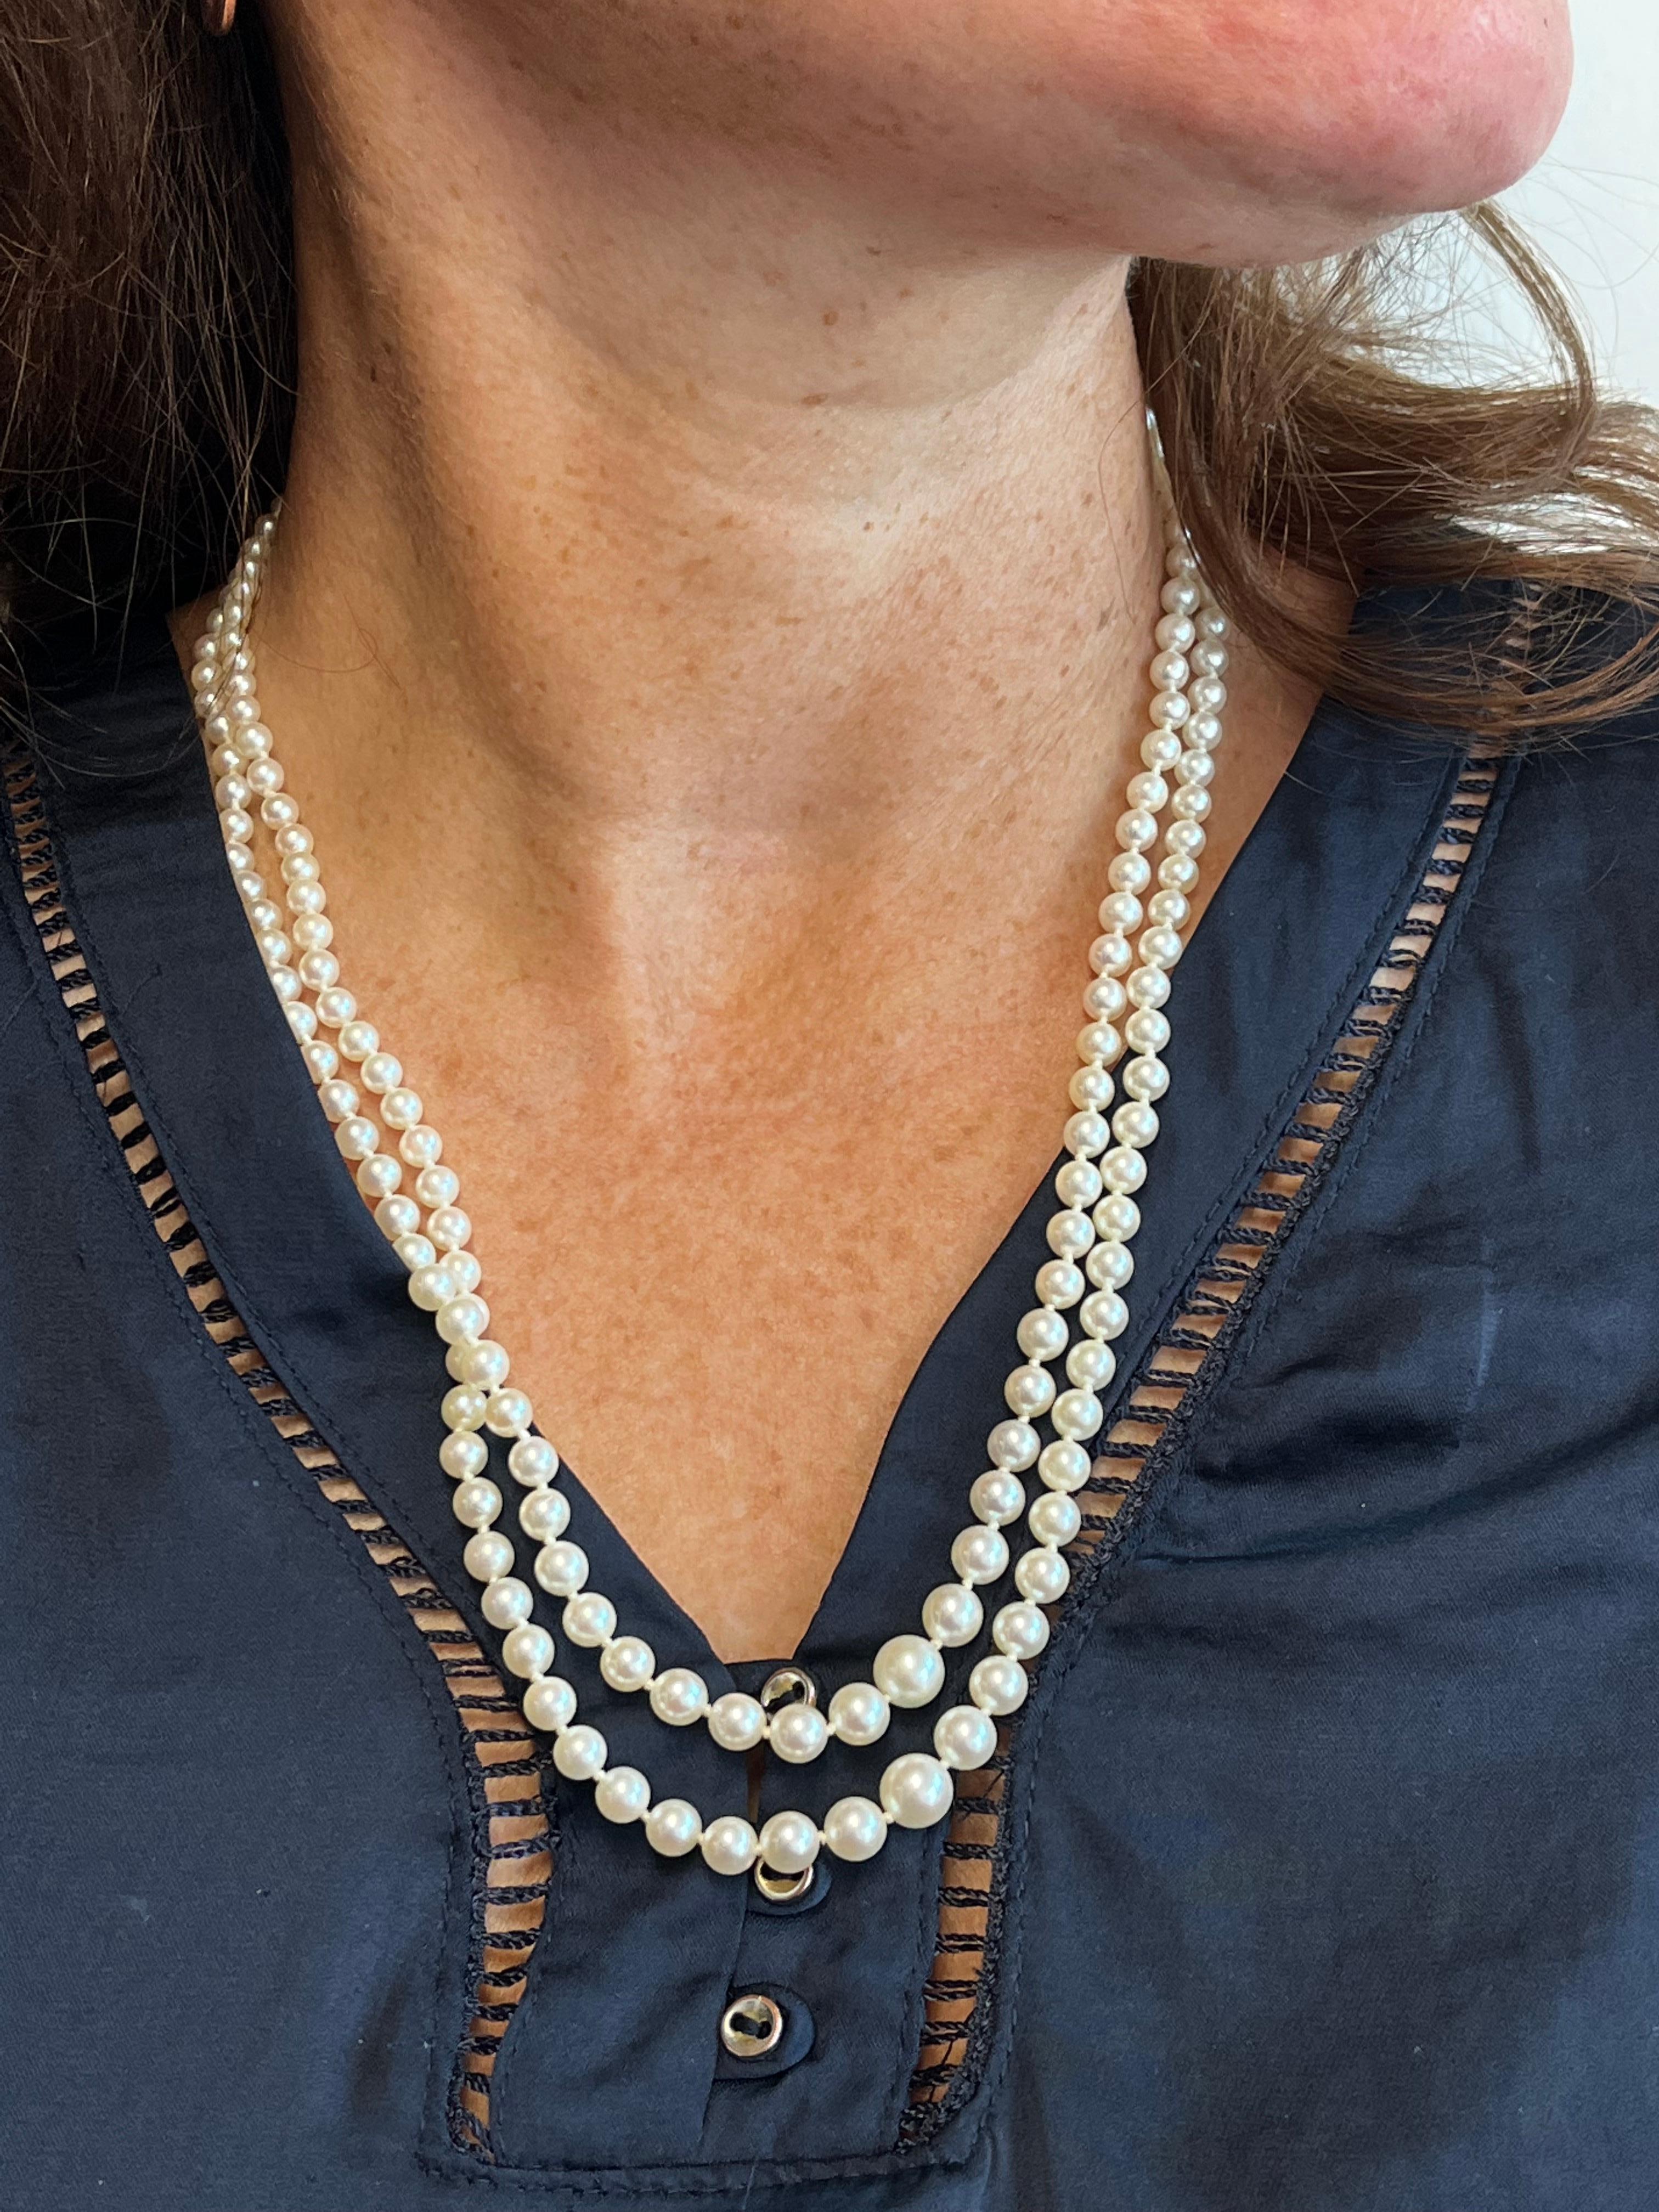 Japanische weiße Akoya-Perlen-Halskette aus der Mitte des Jahrhunderts

Entdecken Sie die Anziehungskraft zeitloser Eleganz mit dieser exquisiten doppelreihigen Kette aus weißen japanischen Akoya-Perlen. Das aus der Mitte des letzten Jahrhunderts